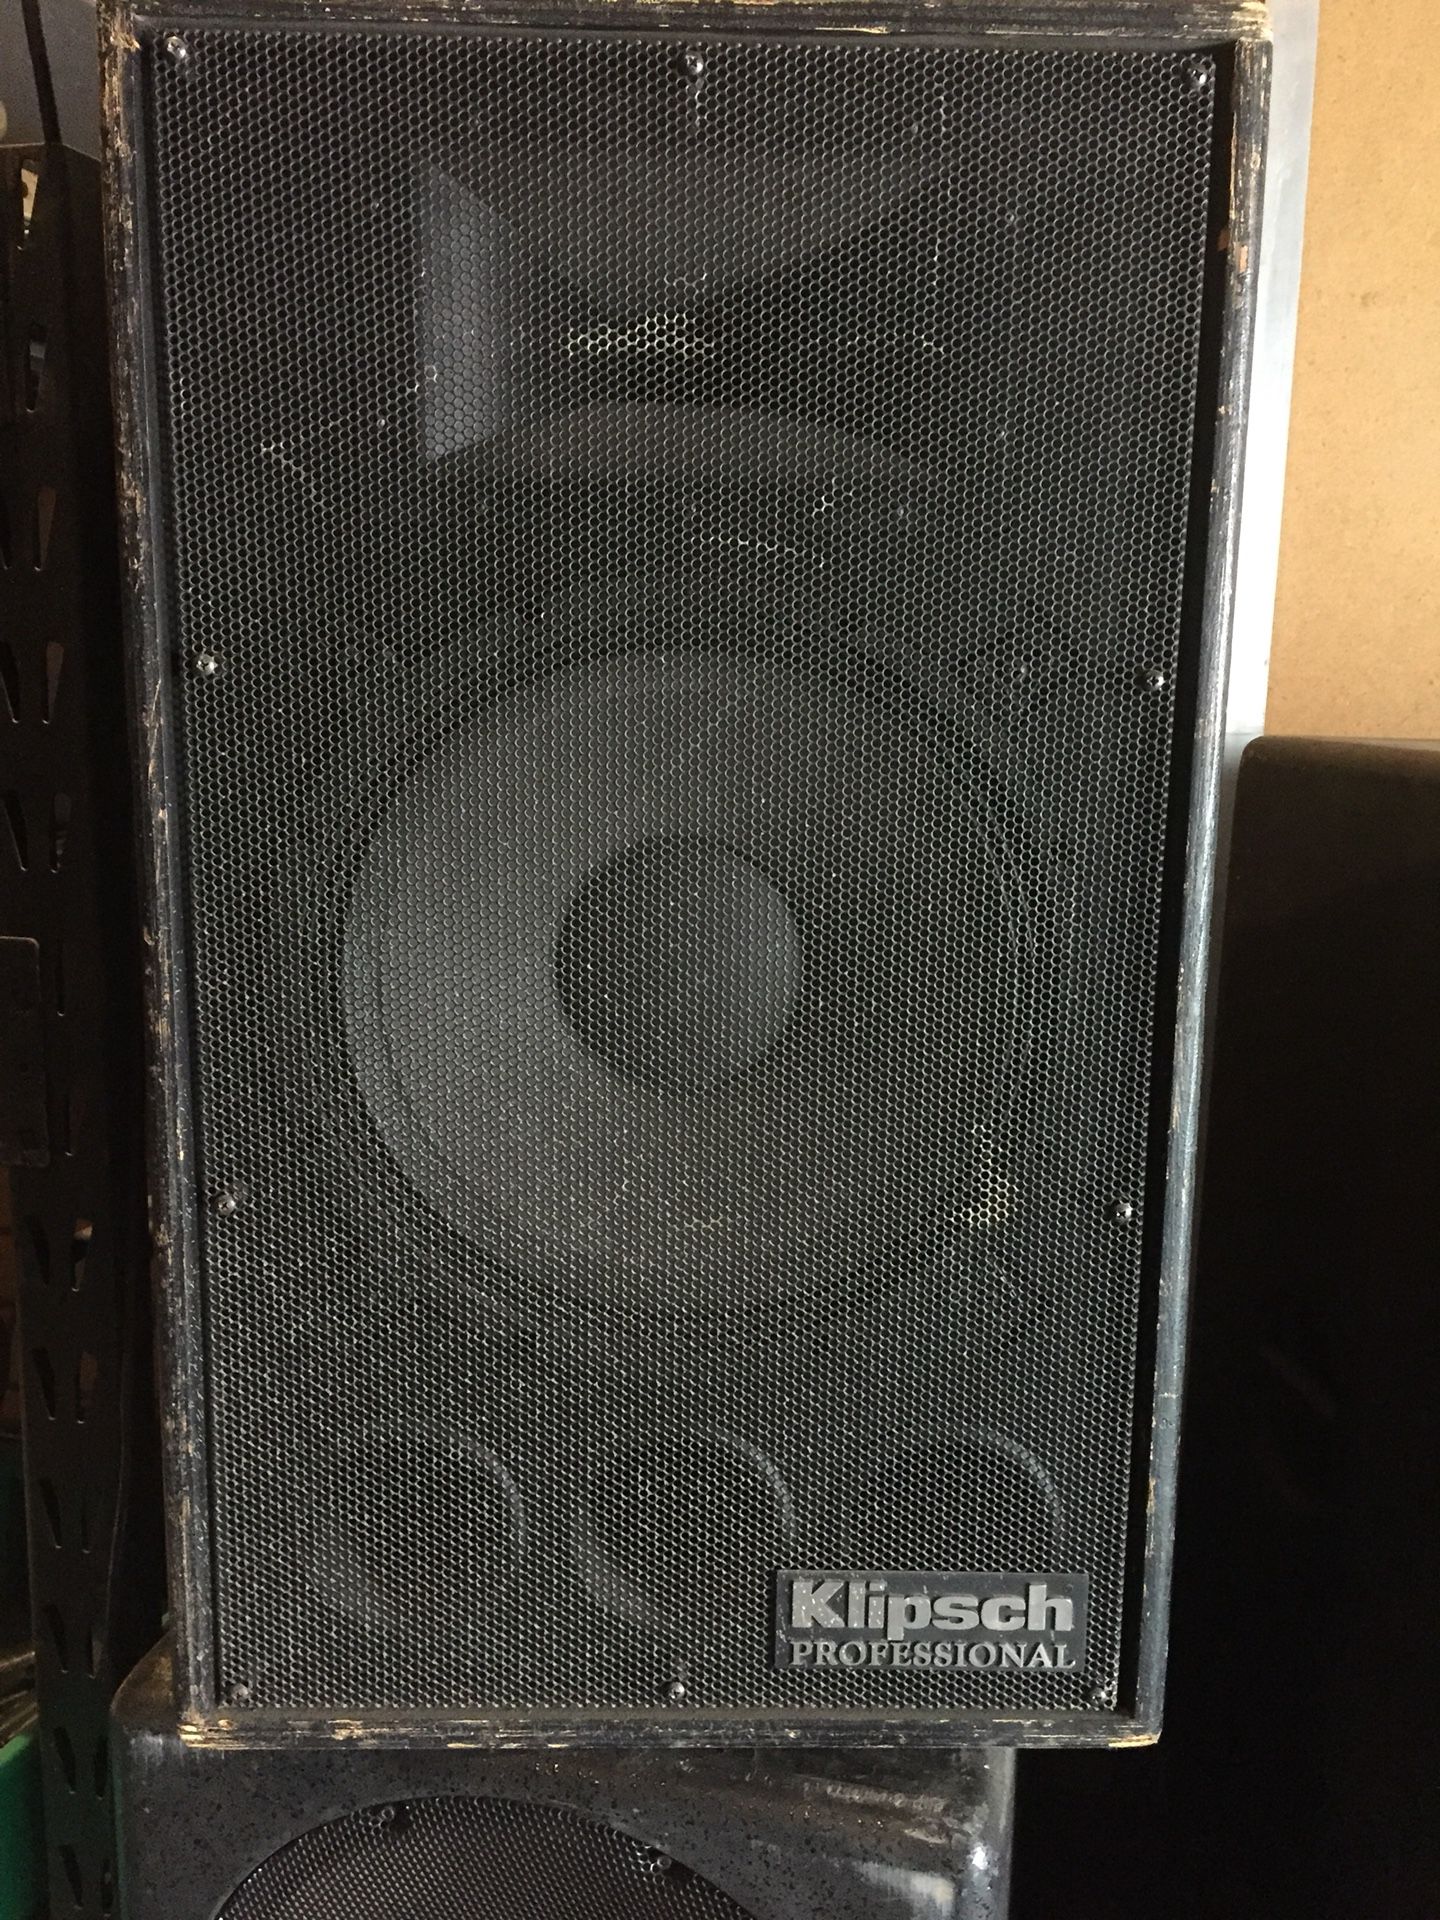 Klipsch Professional PA / Sound Reinforcement Speaker